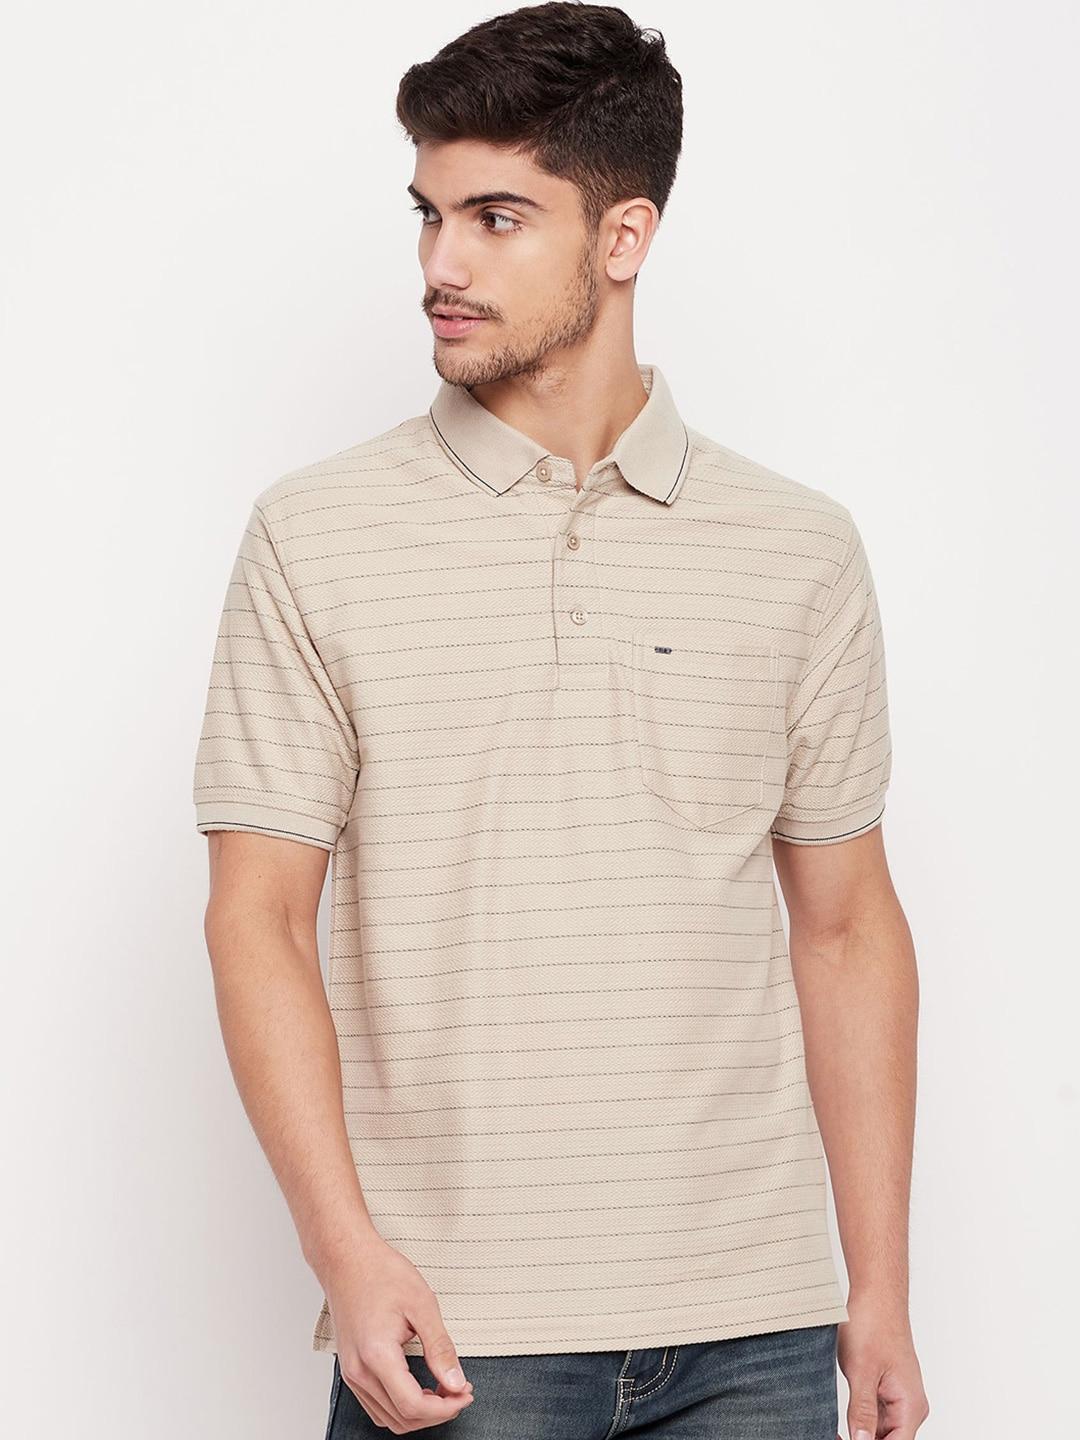 okane-men-cream-coloured-striped-polo-collar-pockets-t-shirt